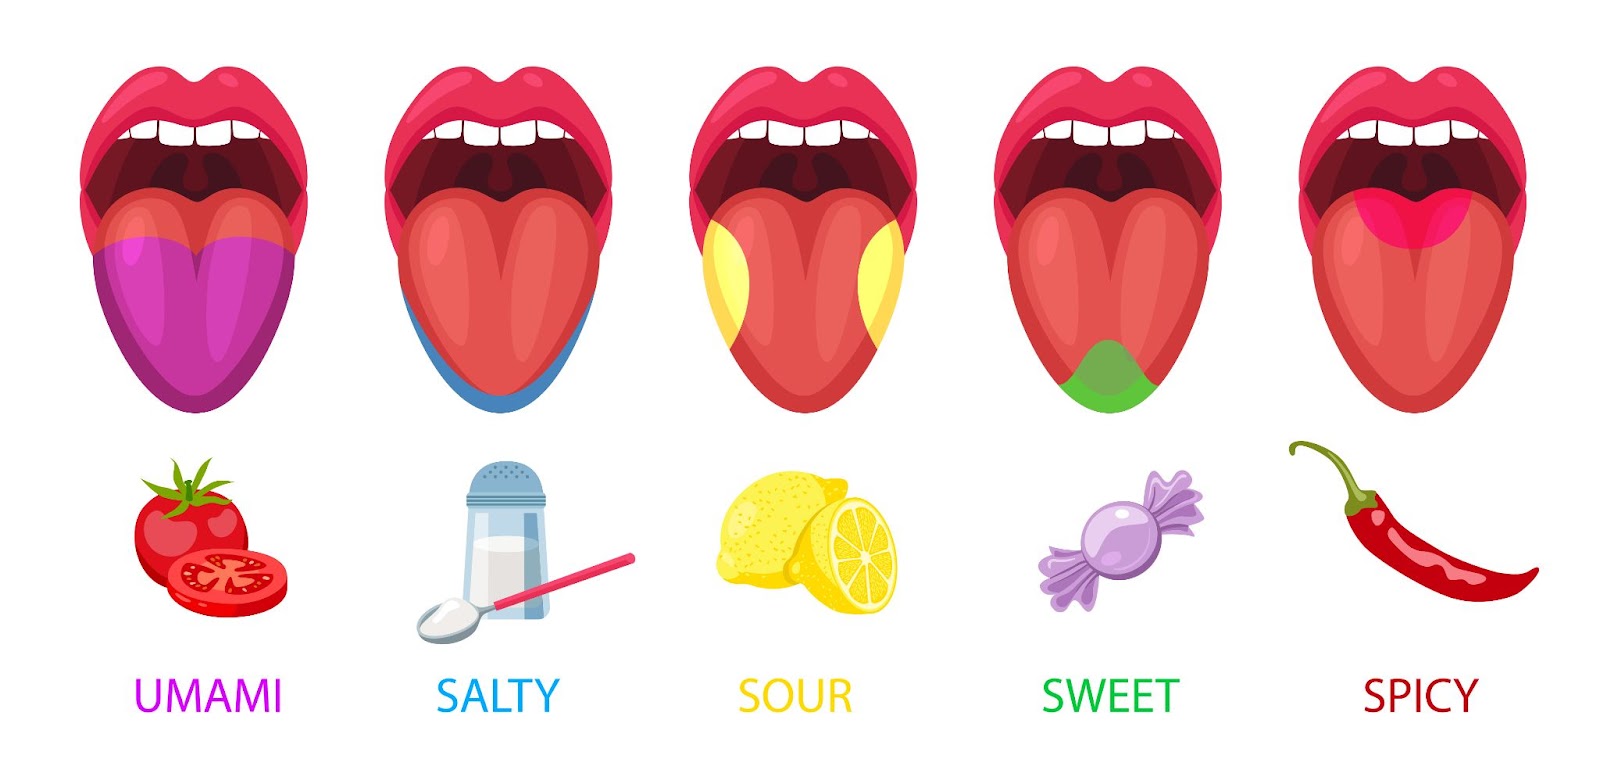 Foto që ilustron sythet e shijes te gjuha e njeriut. 